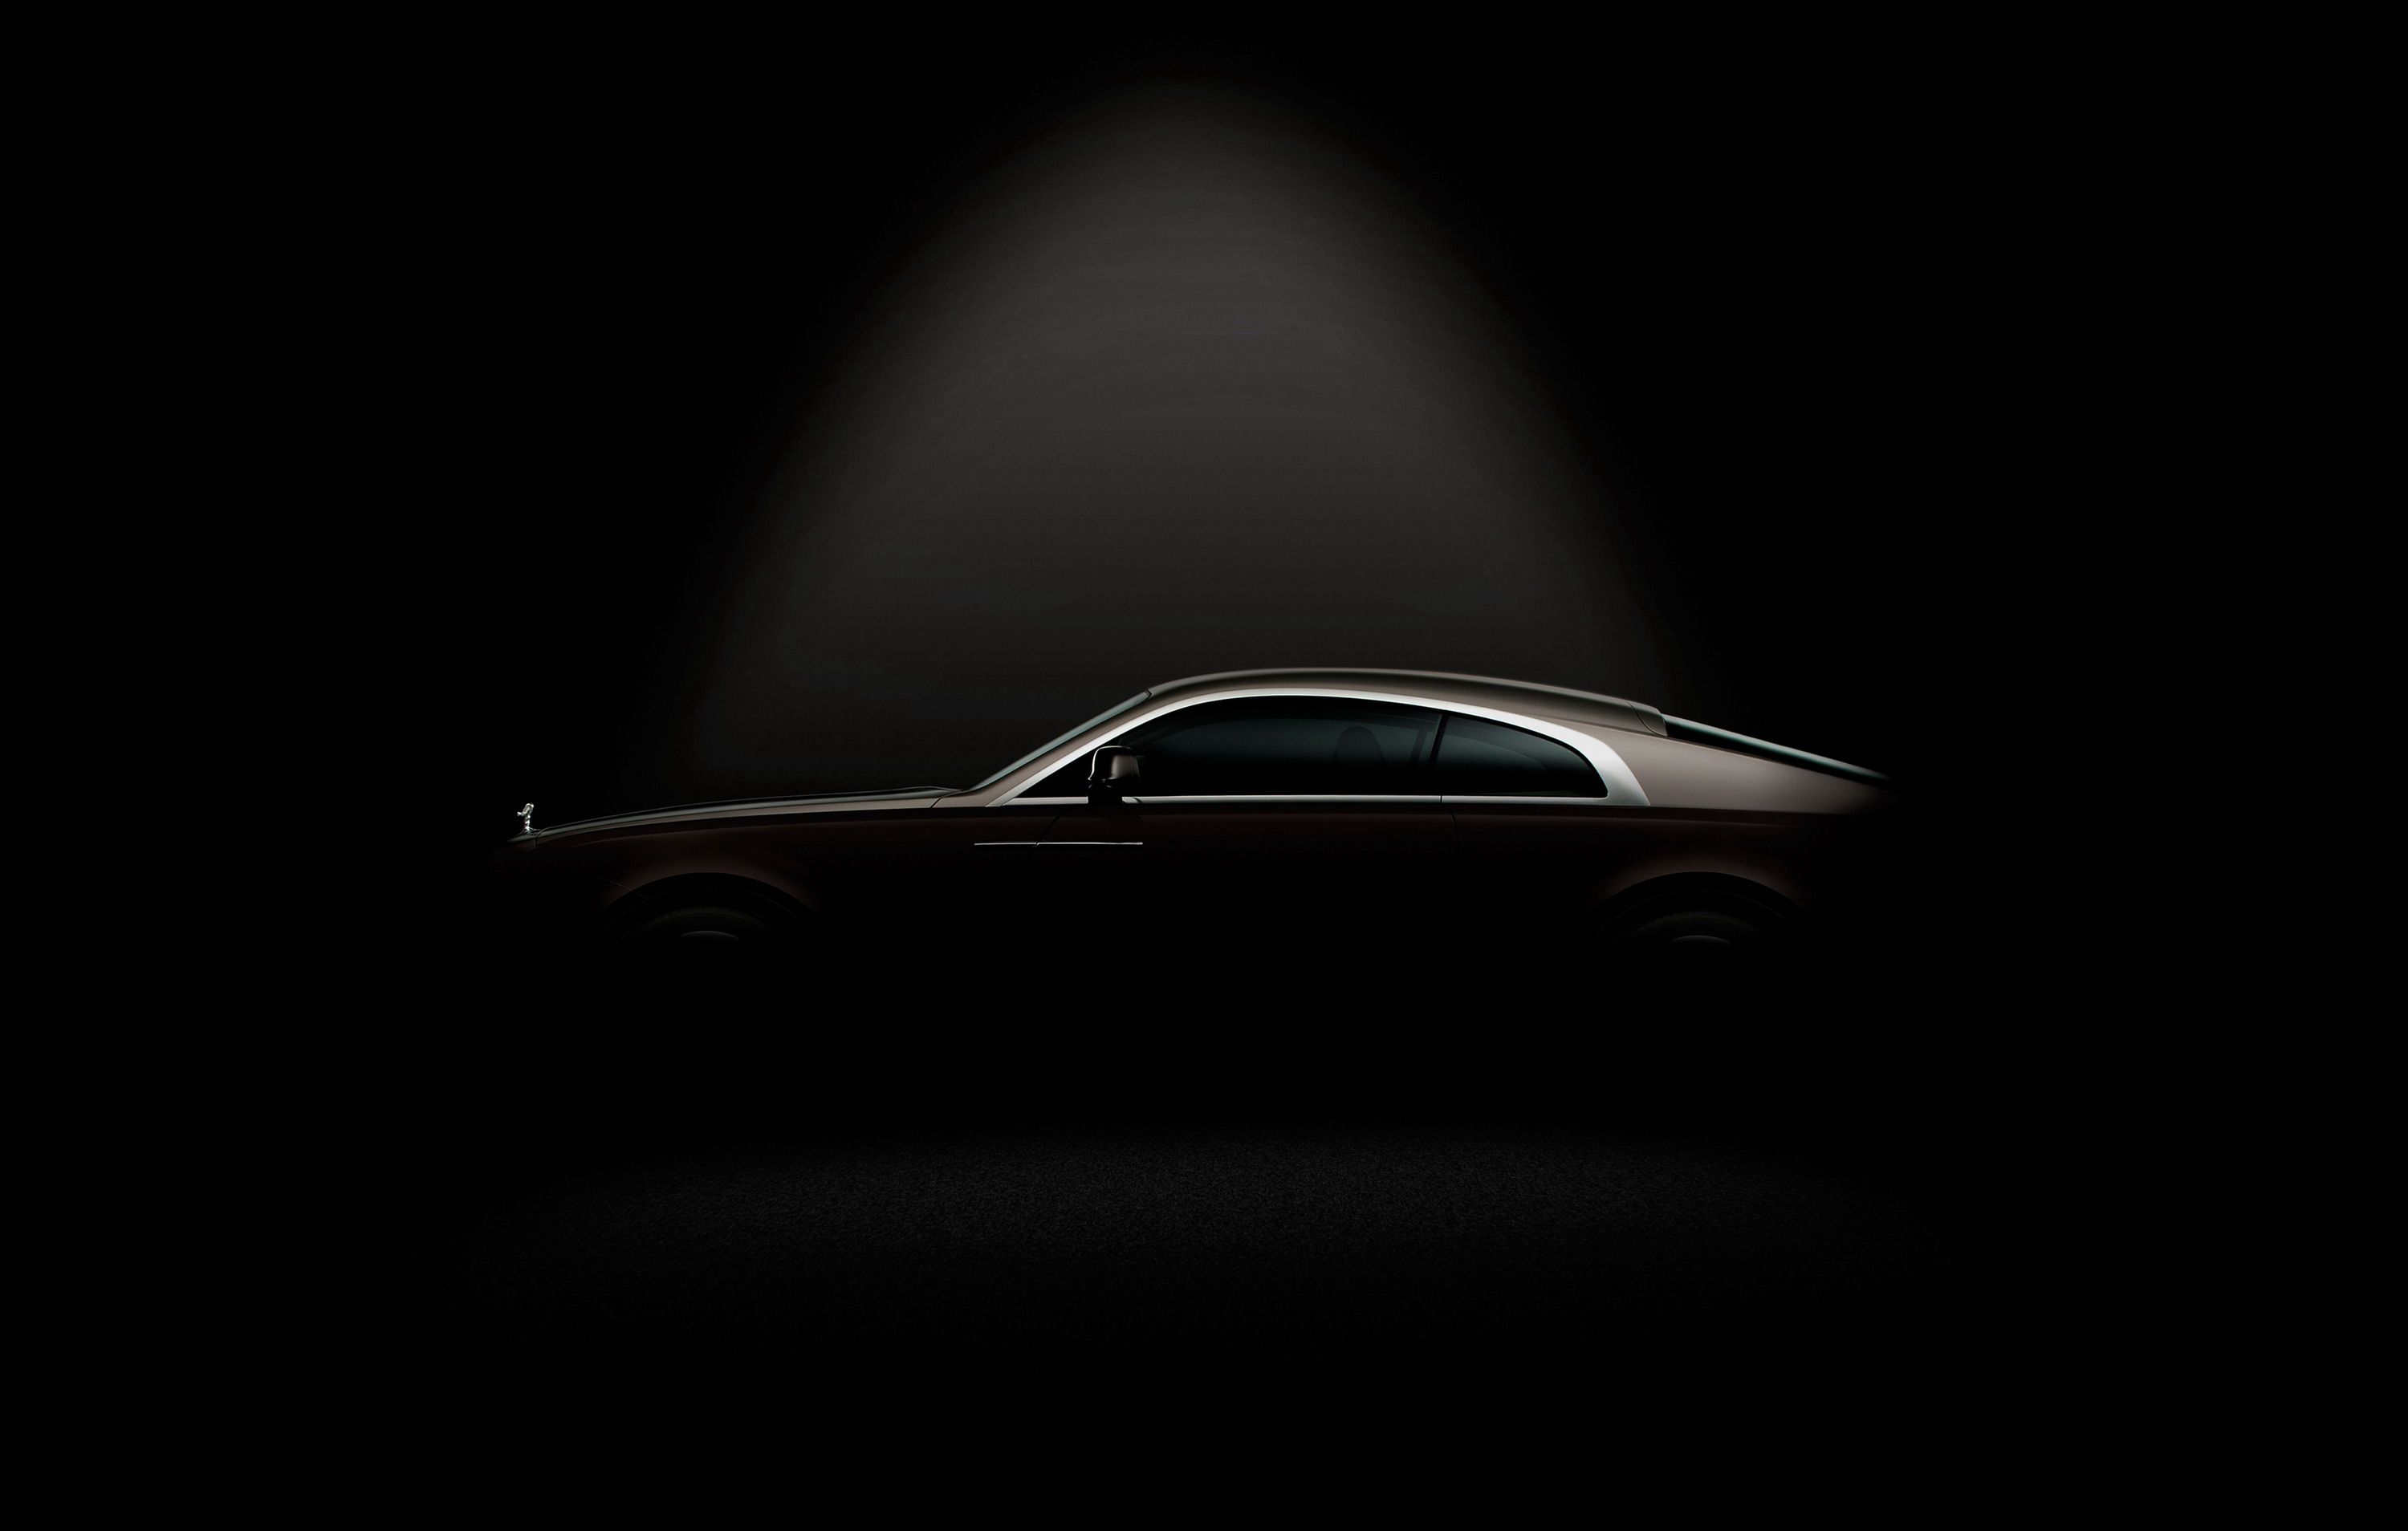 2014 Rolls Royce Wraith